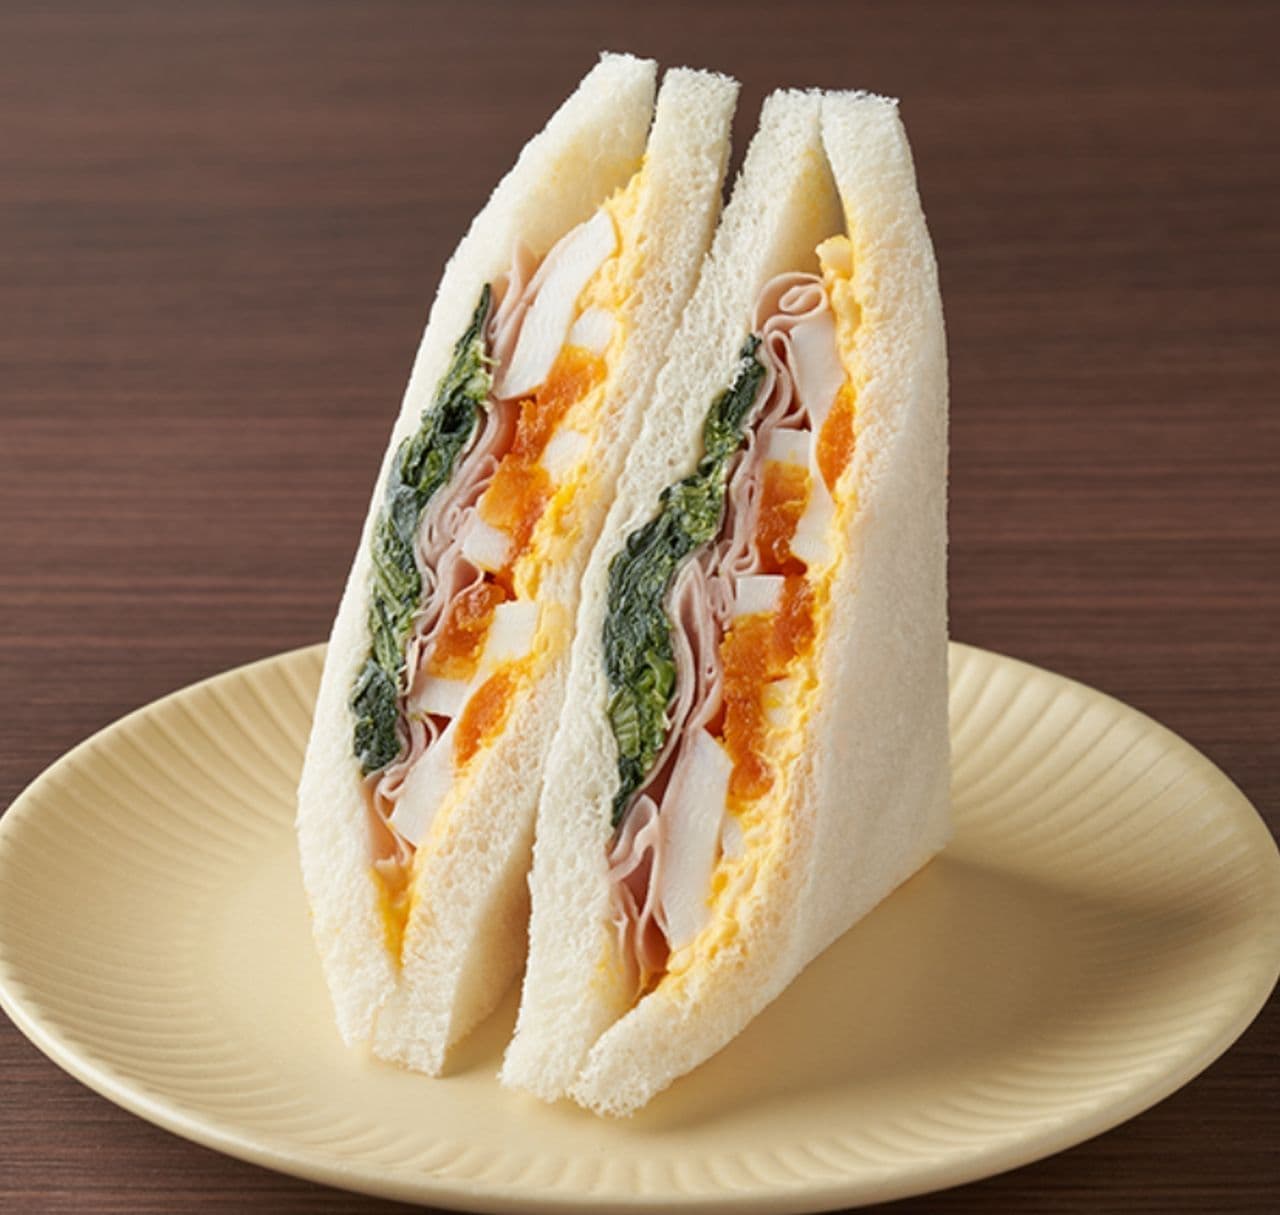 FamilyMart "Ham, Egg & Vegetable Mixed Sandwich